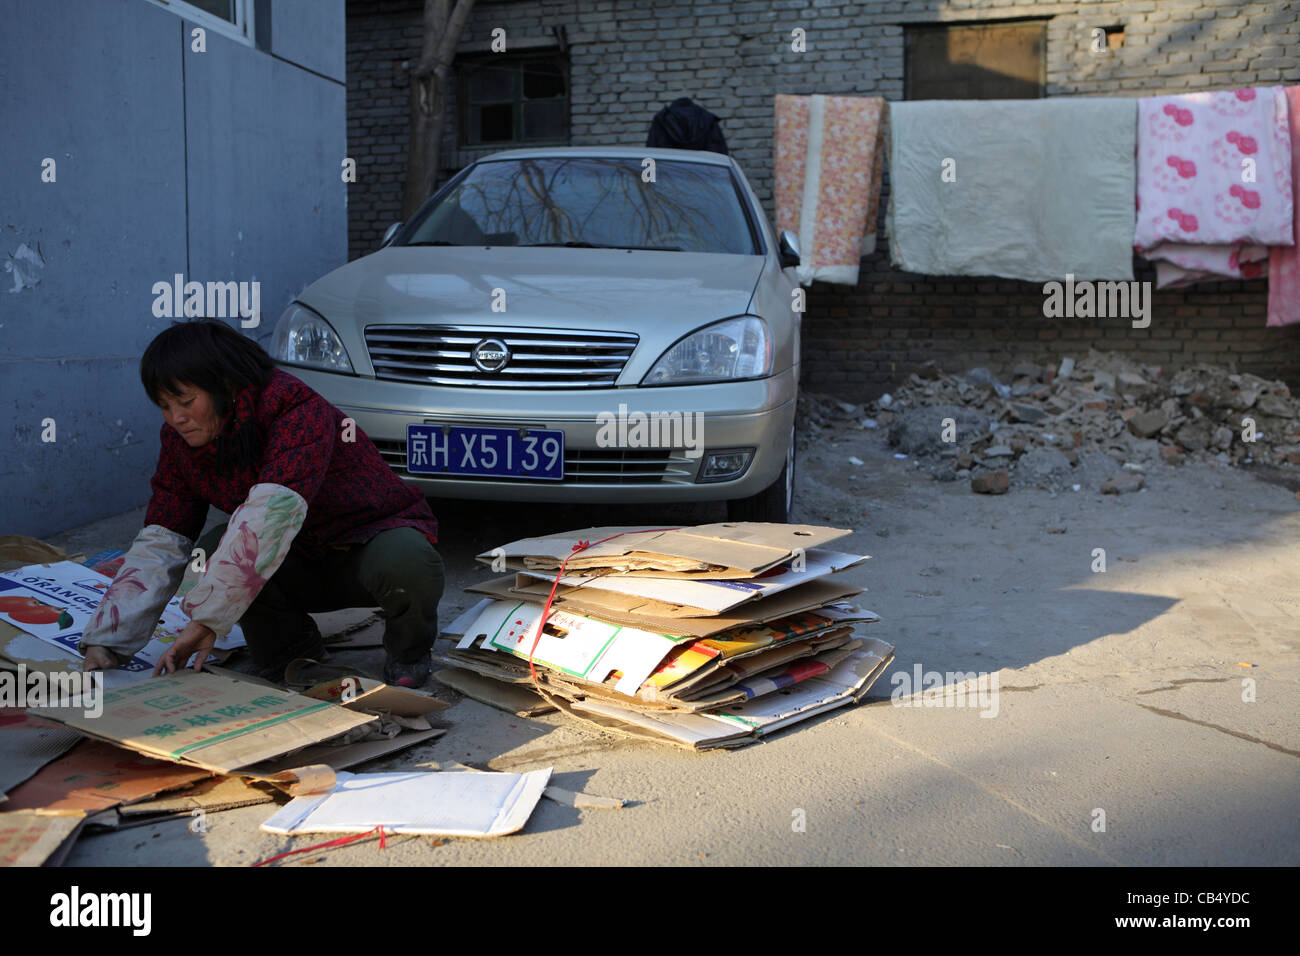 Chinesische Migrantin Gegenüberstellung mit gesammelten wiederverwertbare Karte vor modernen teuer importiertes Auto, Peking, China Stockfoto